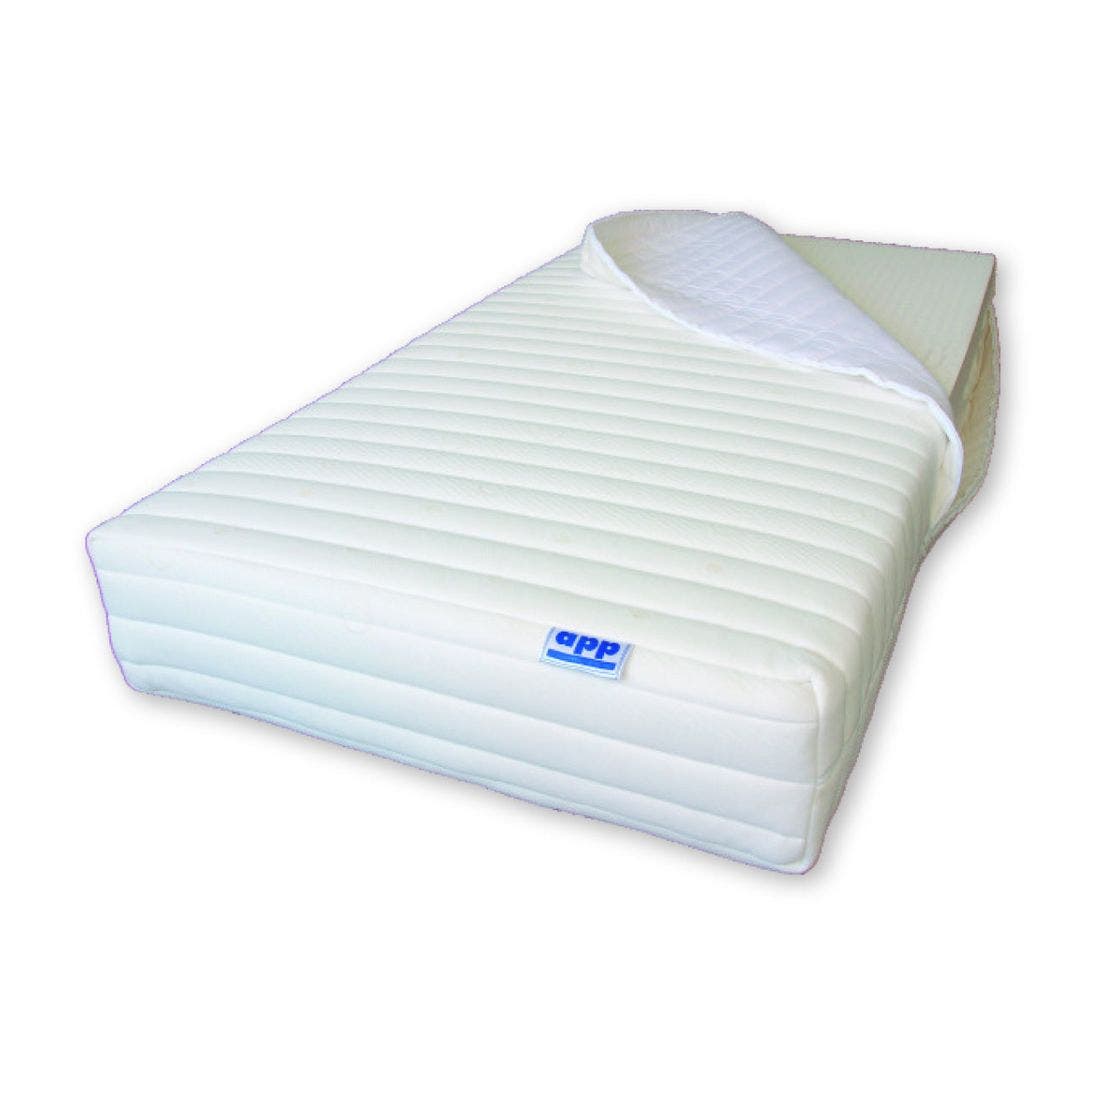 39001669-mattress-bedding-mattresses-latex-mattresses-33